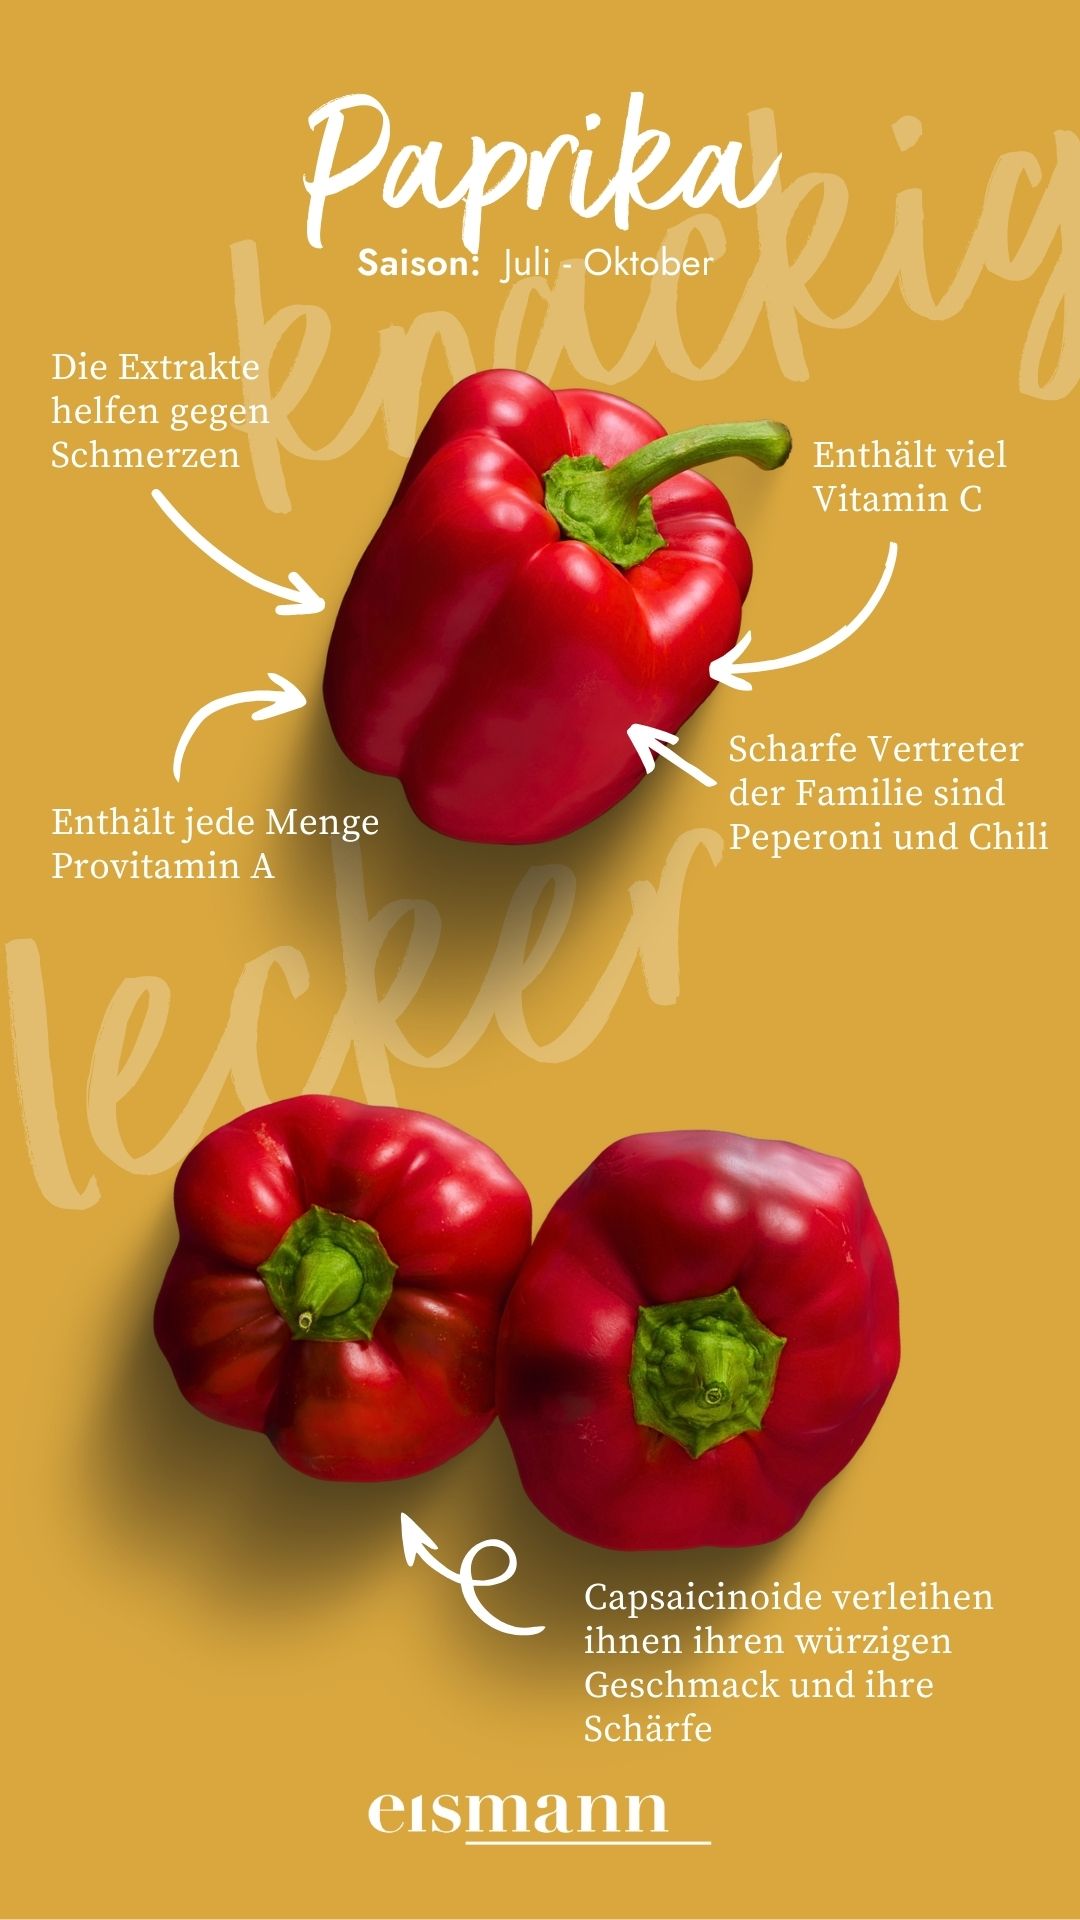 Paprika - Eigenschaften, Saison und Vorteile in der Ernährung